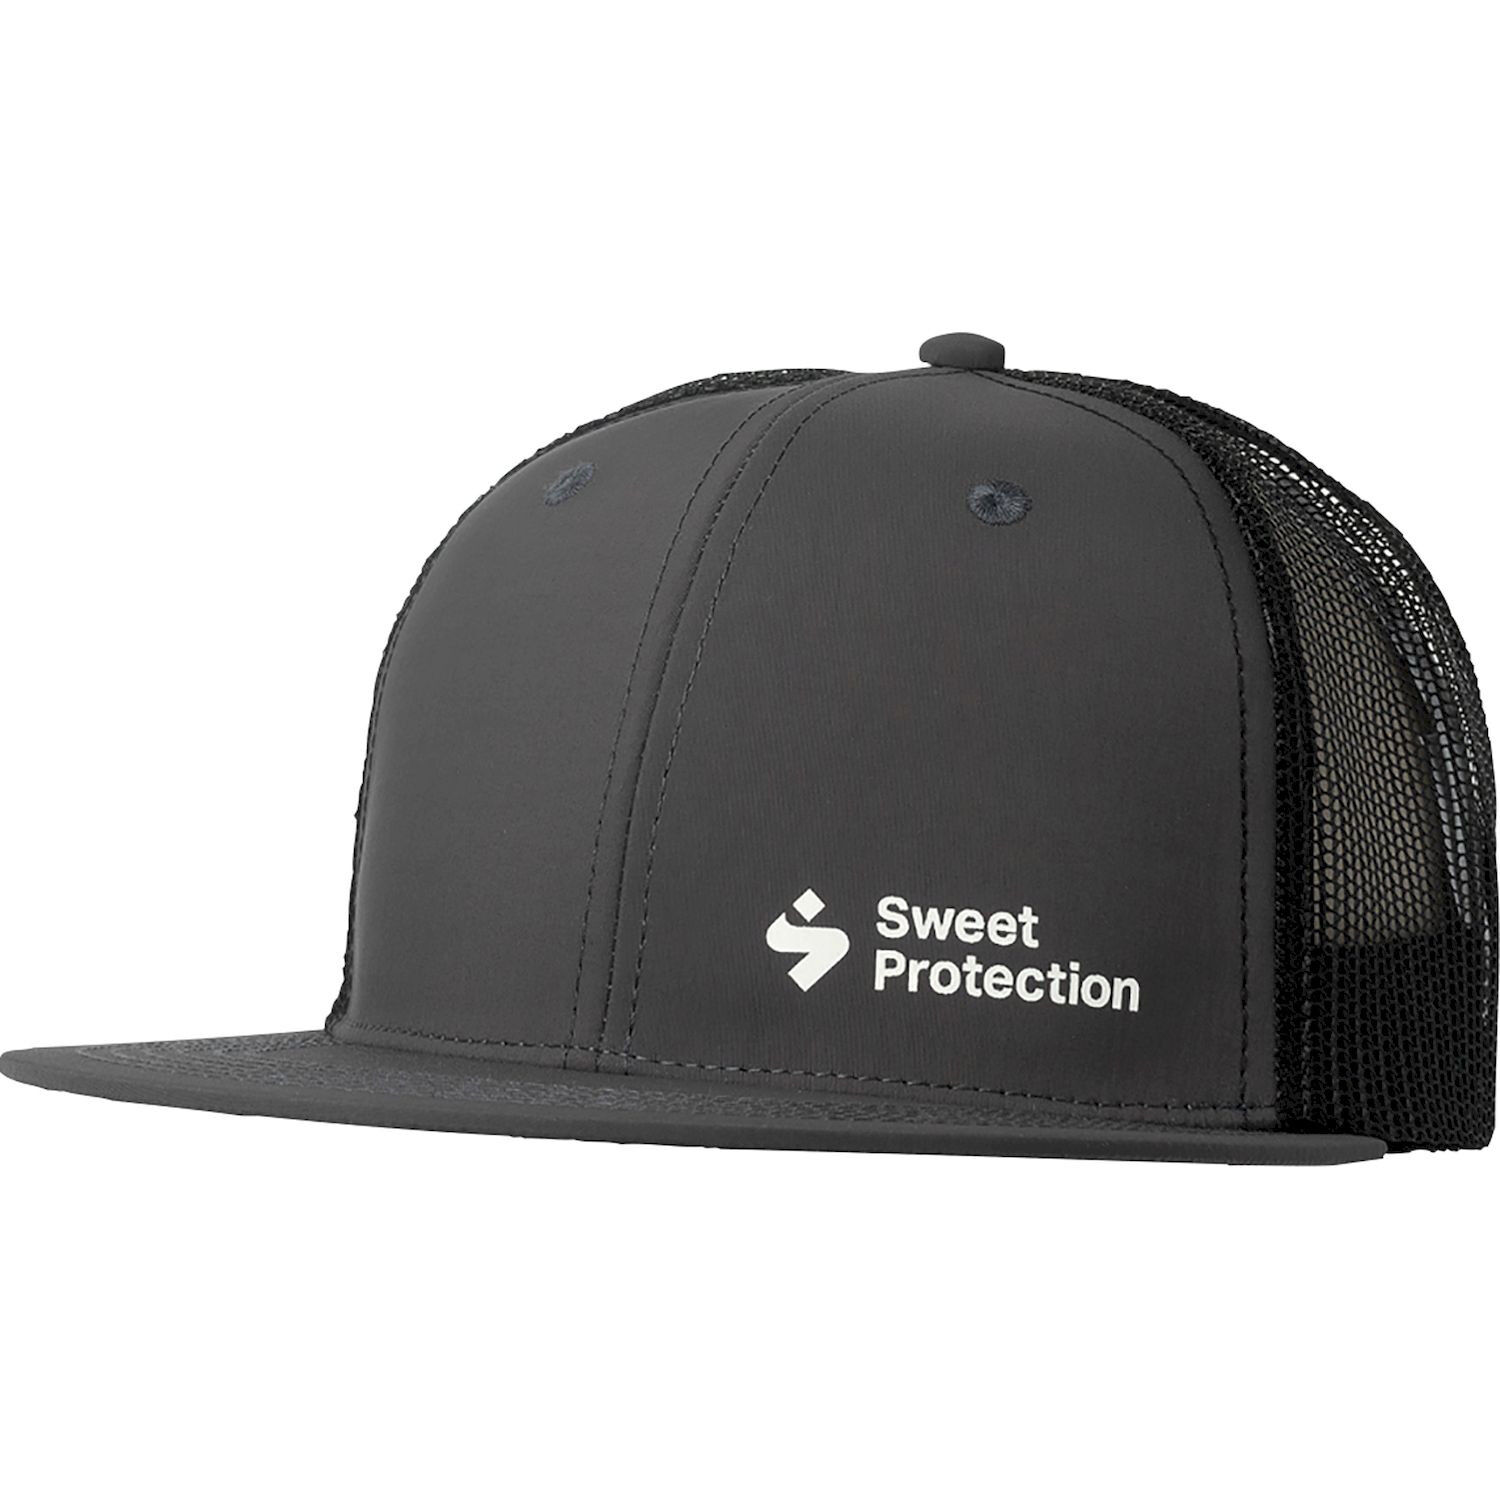 Sweet Protection Corporate Trucker Cap - Cap - Men's